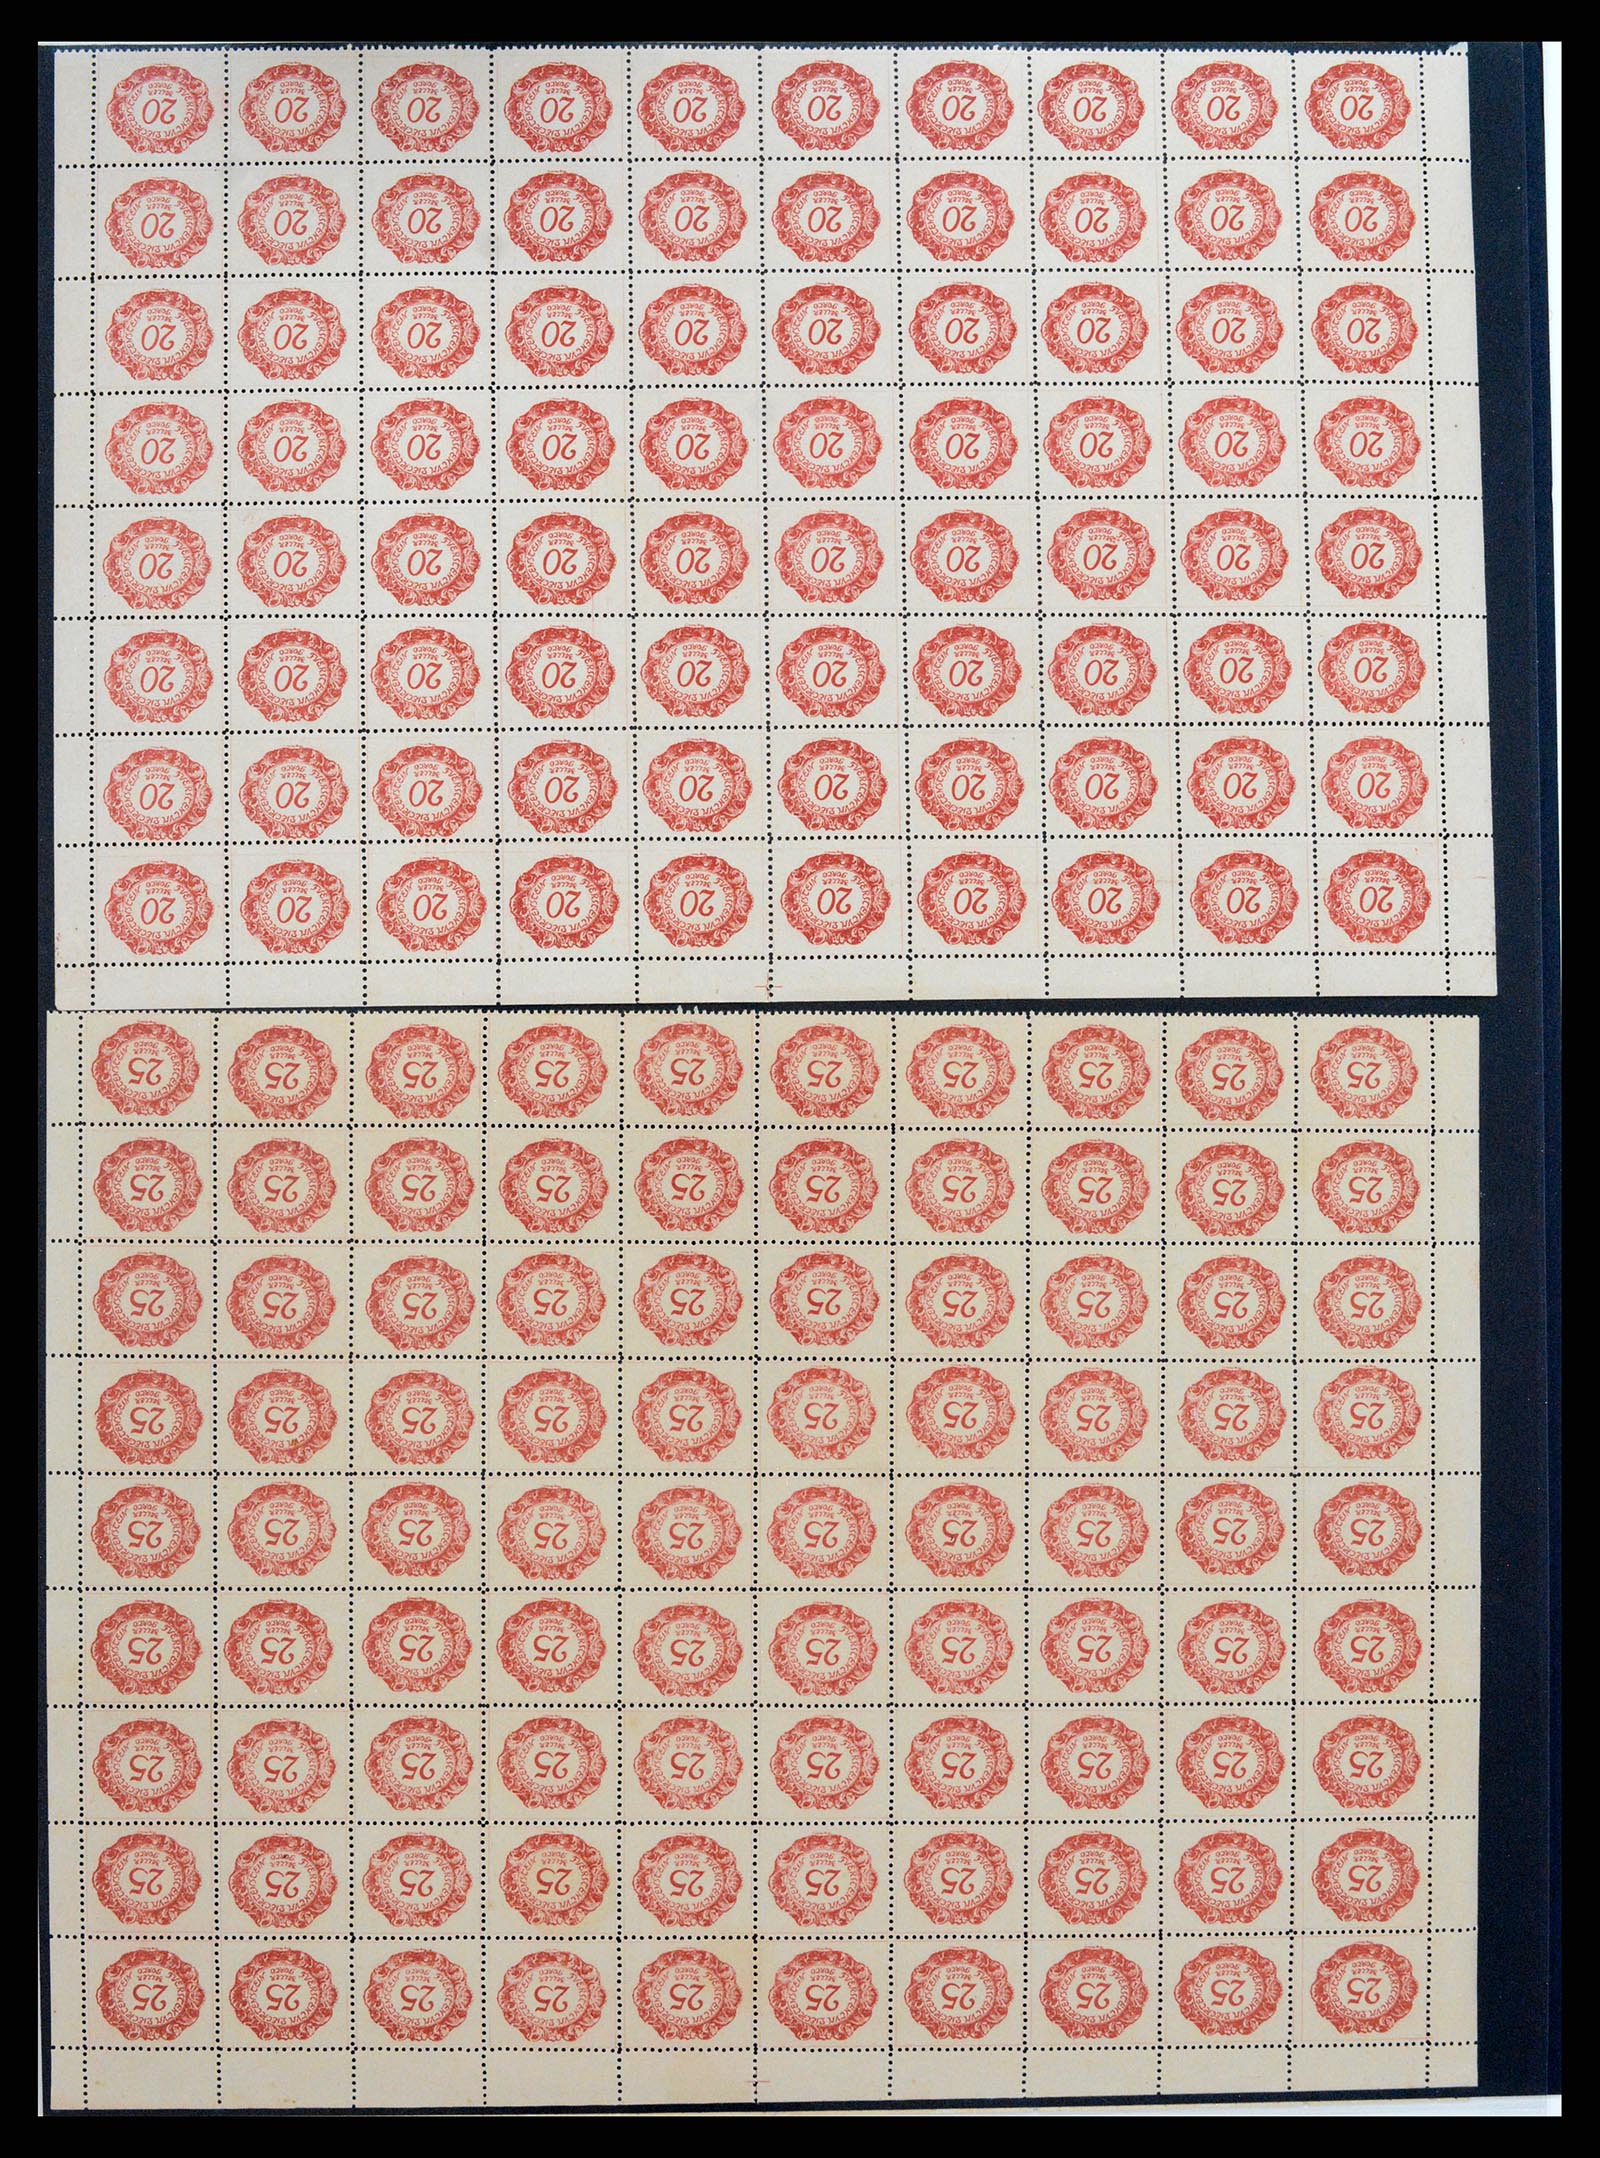 37150 1698 - Stamp collection 37150 Liechtenstein supercollection 1912-1962.